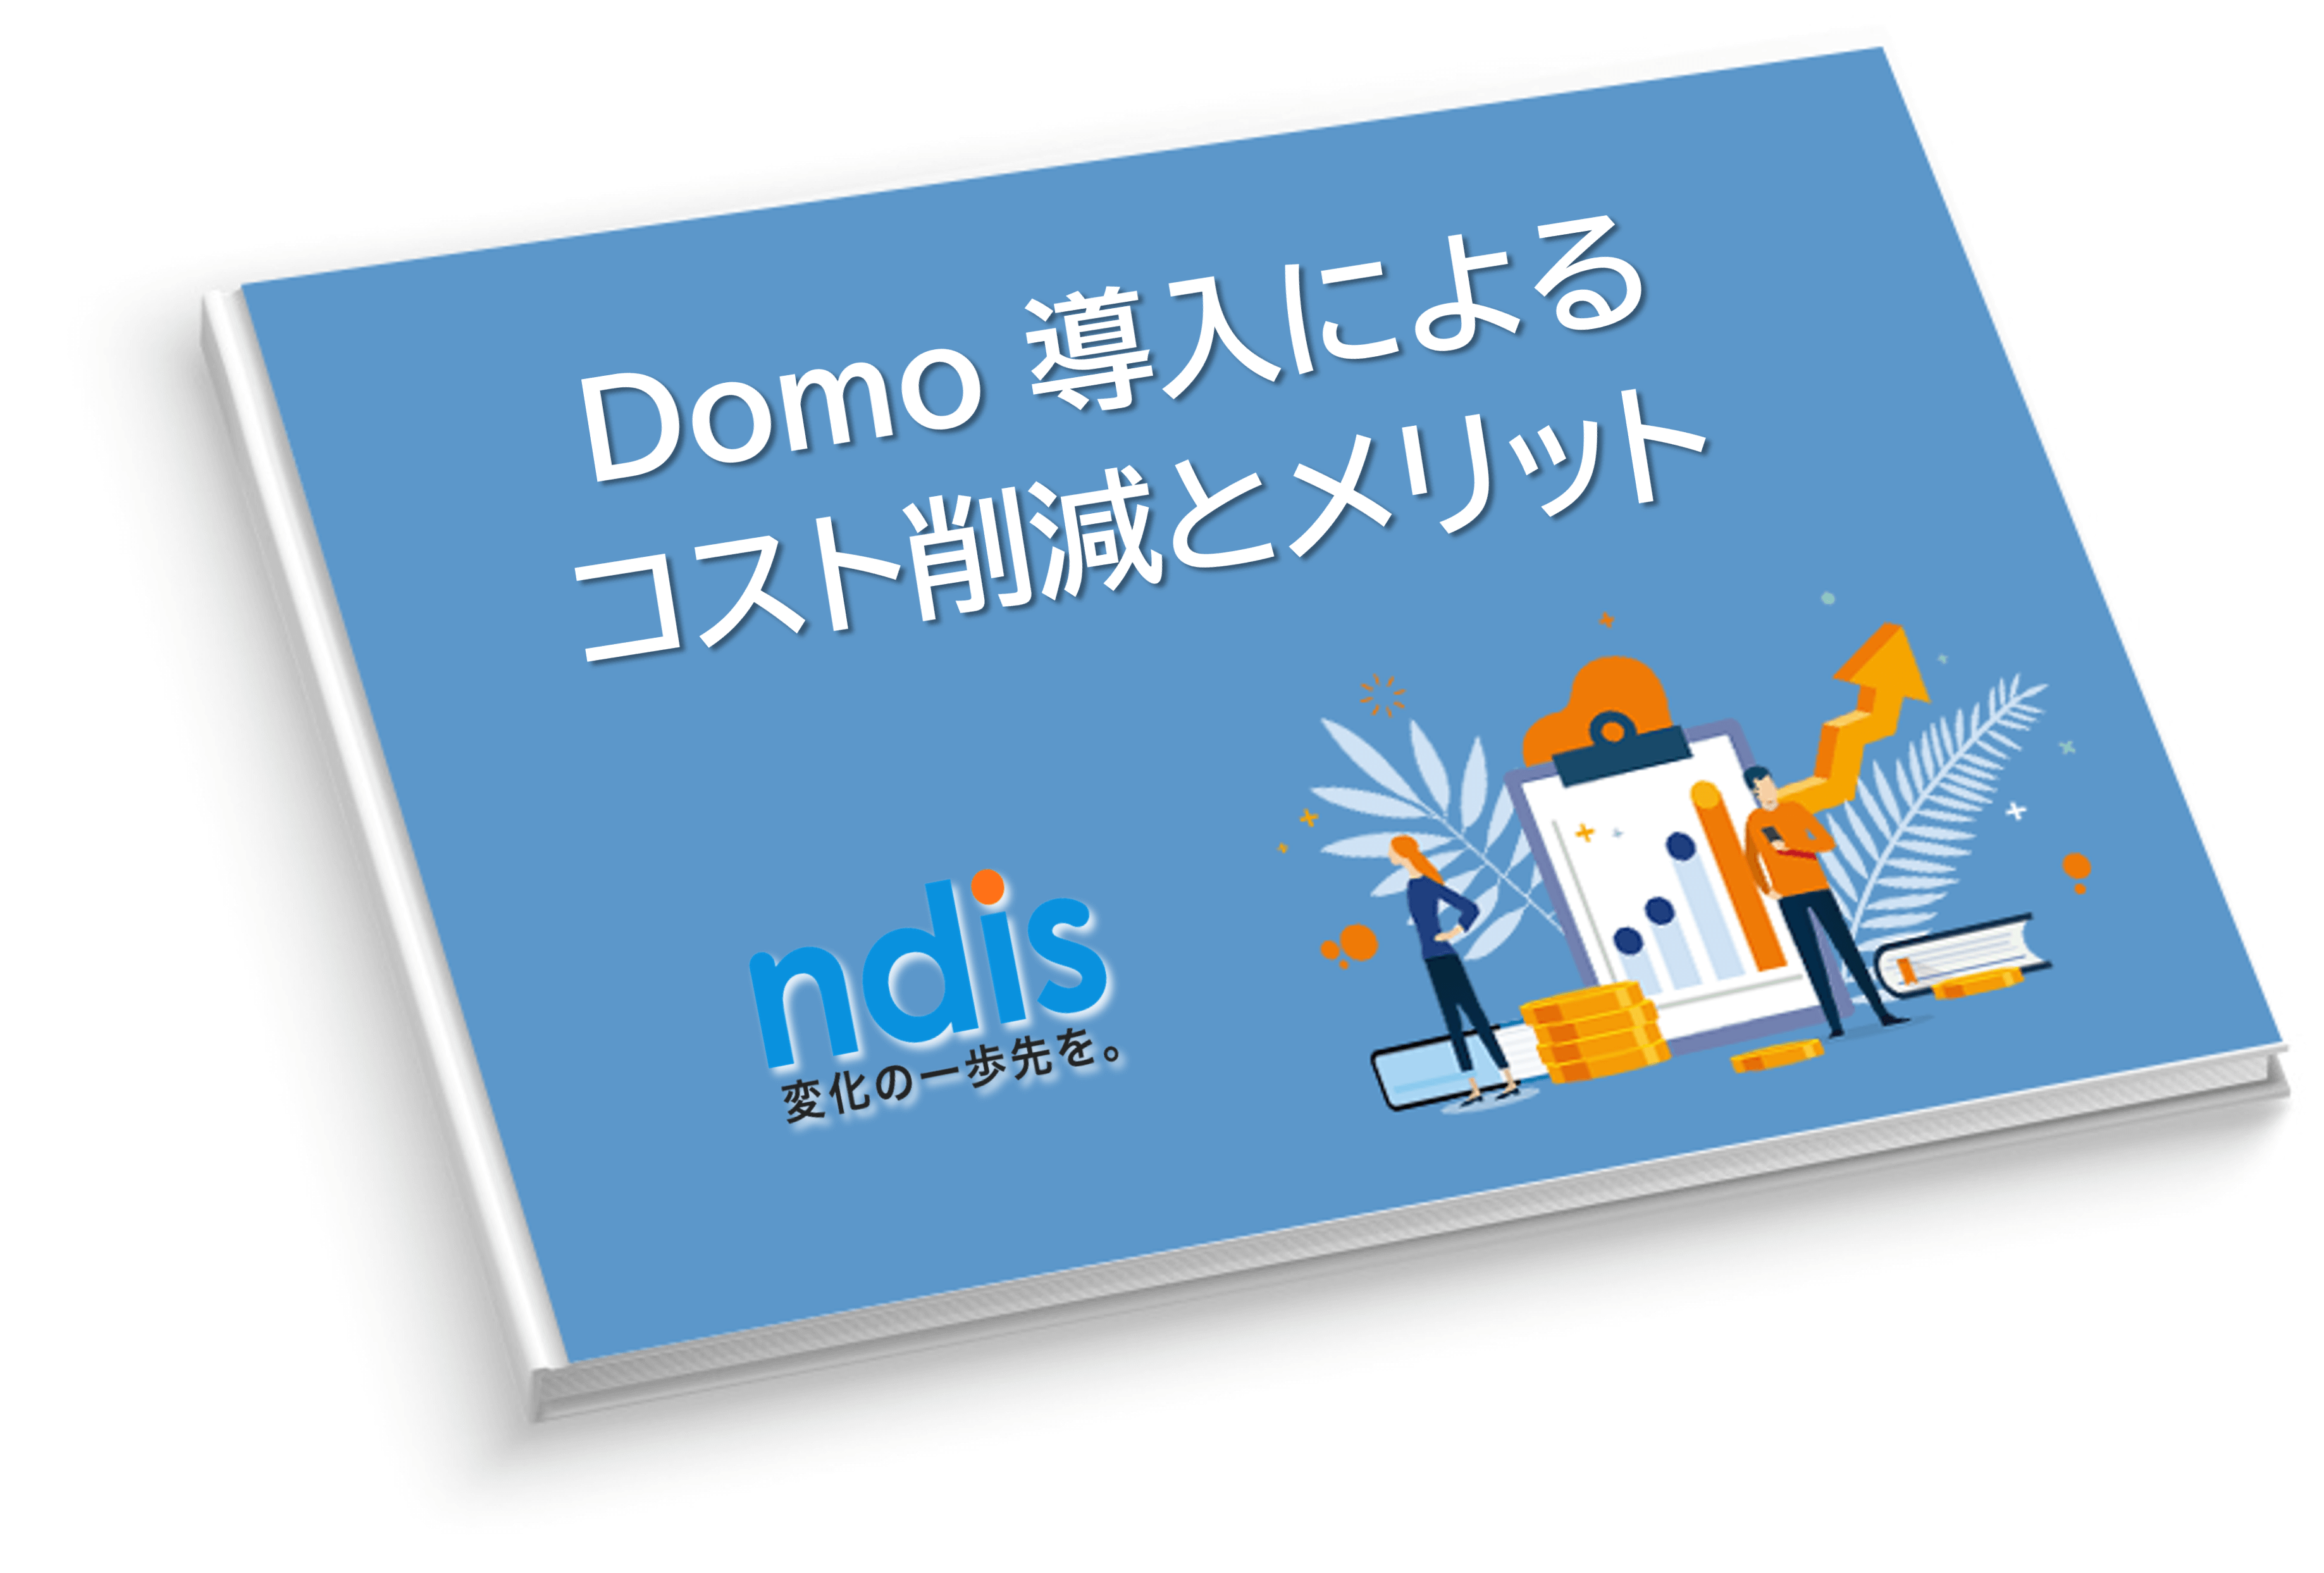 Domo資料03_Domo 導入によるコスト削減とメリット